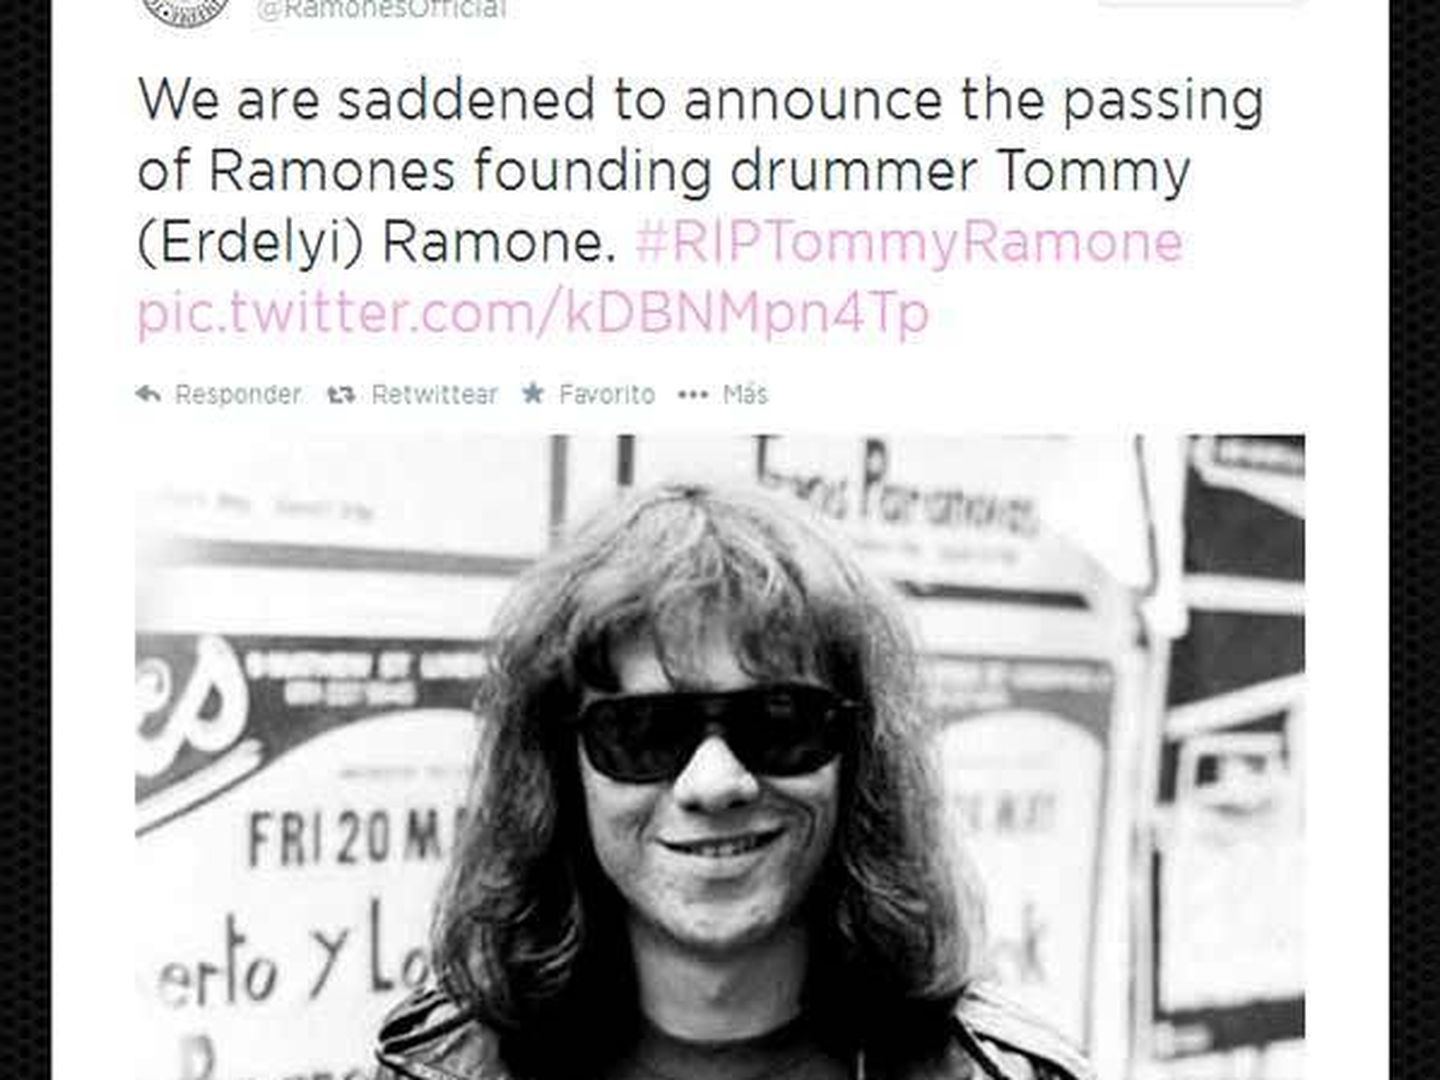 @RamonesOfficial anuncia la muerte de Tommy Ramone